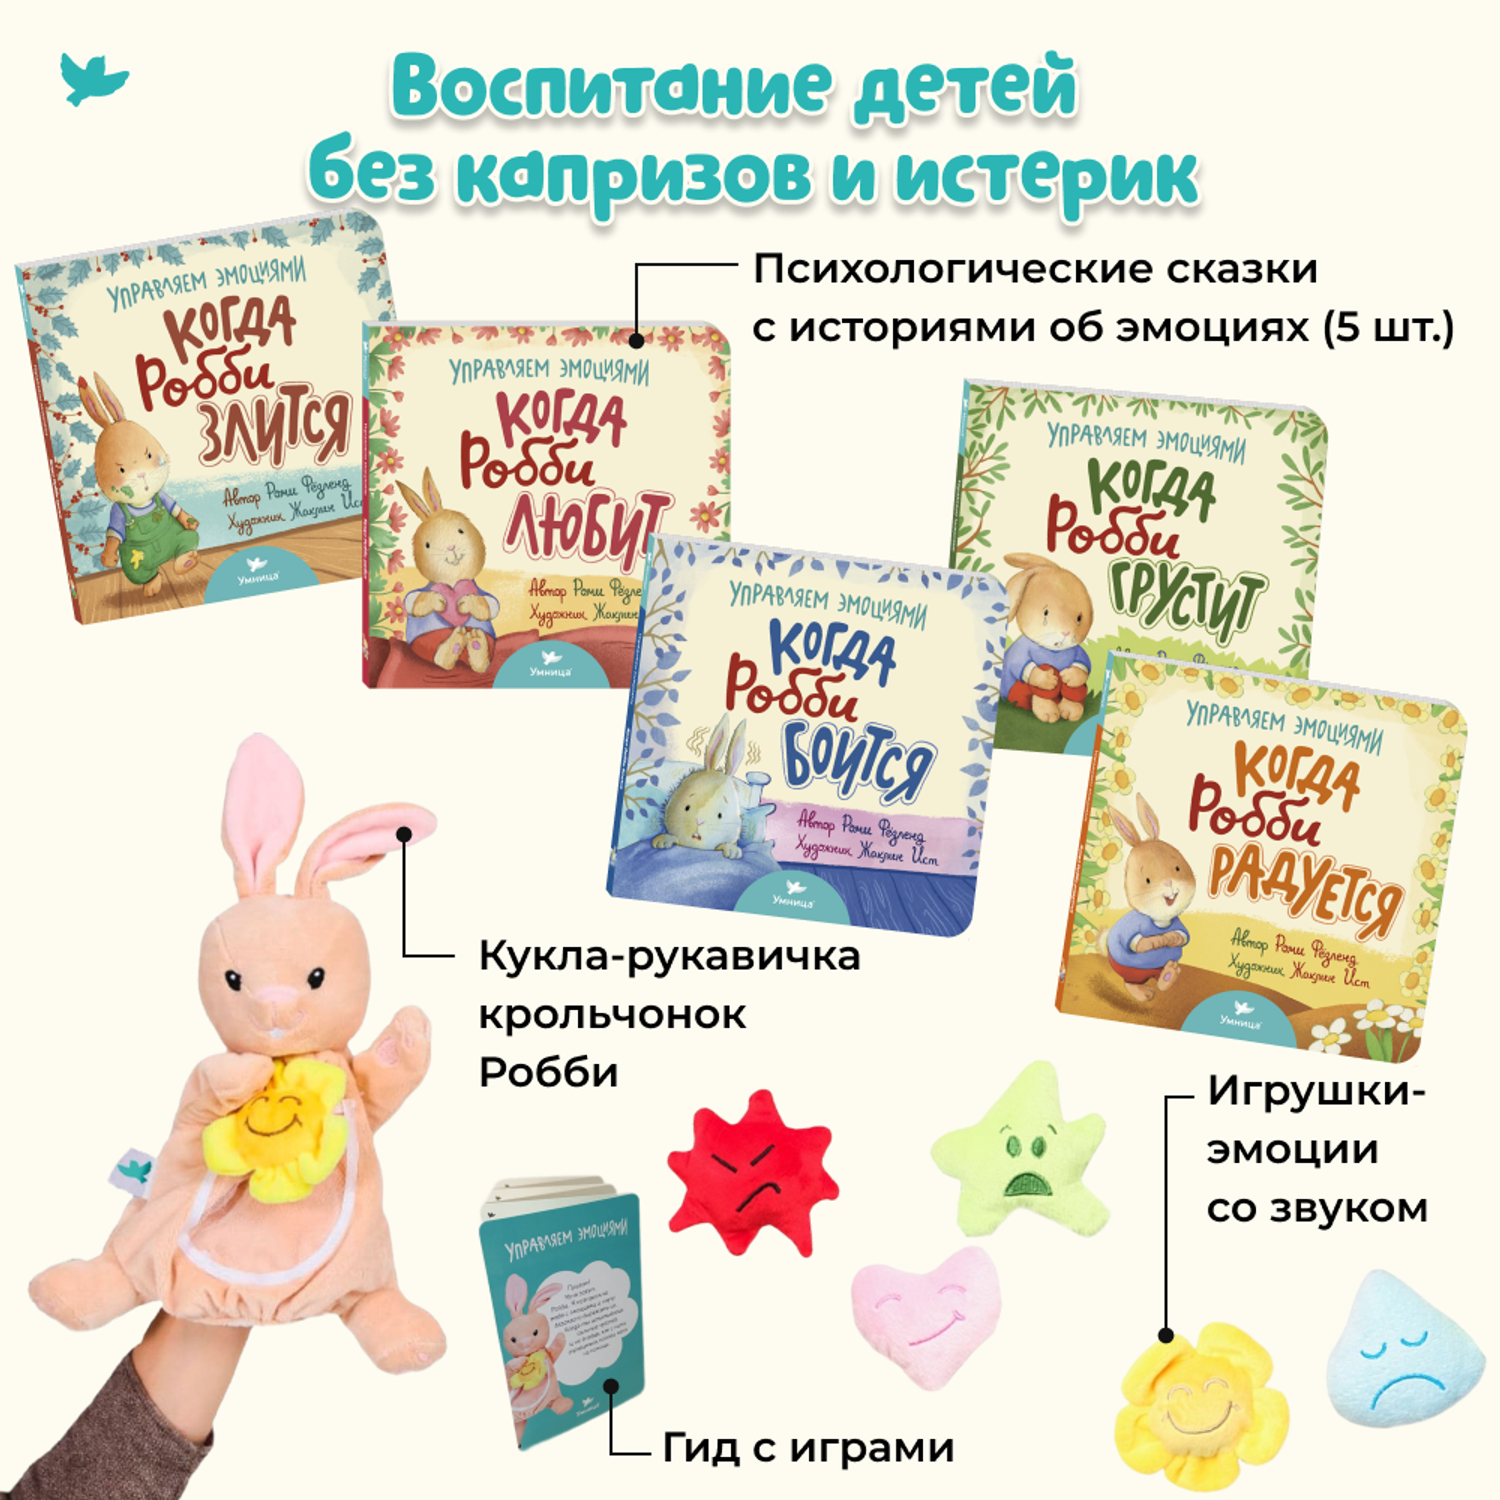 Набор книг и игрушек Умница сказки про эмоции и мягкая кукла-рукавичка 5 игрушек со звуком для новорожденных - фото 2